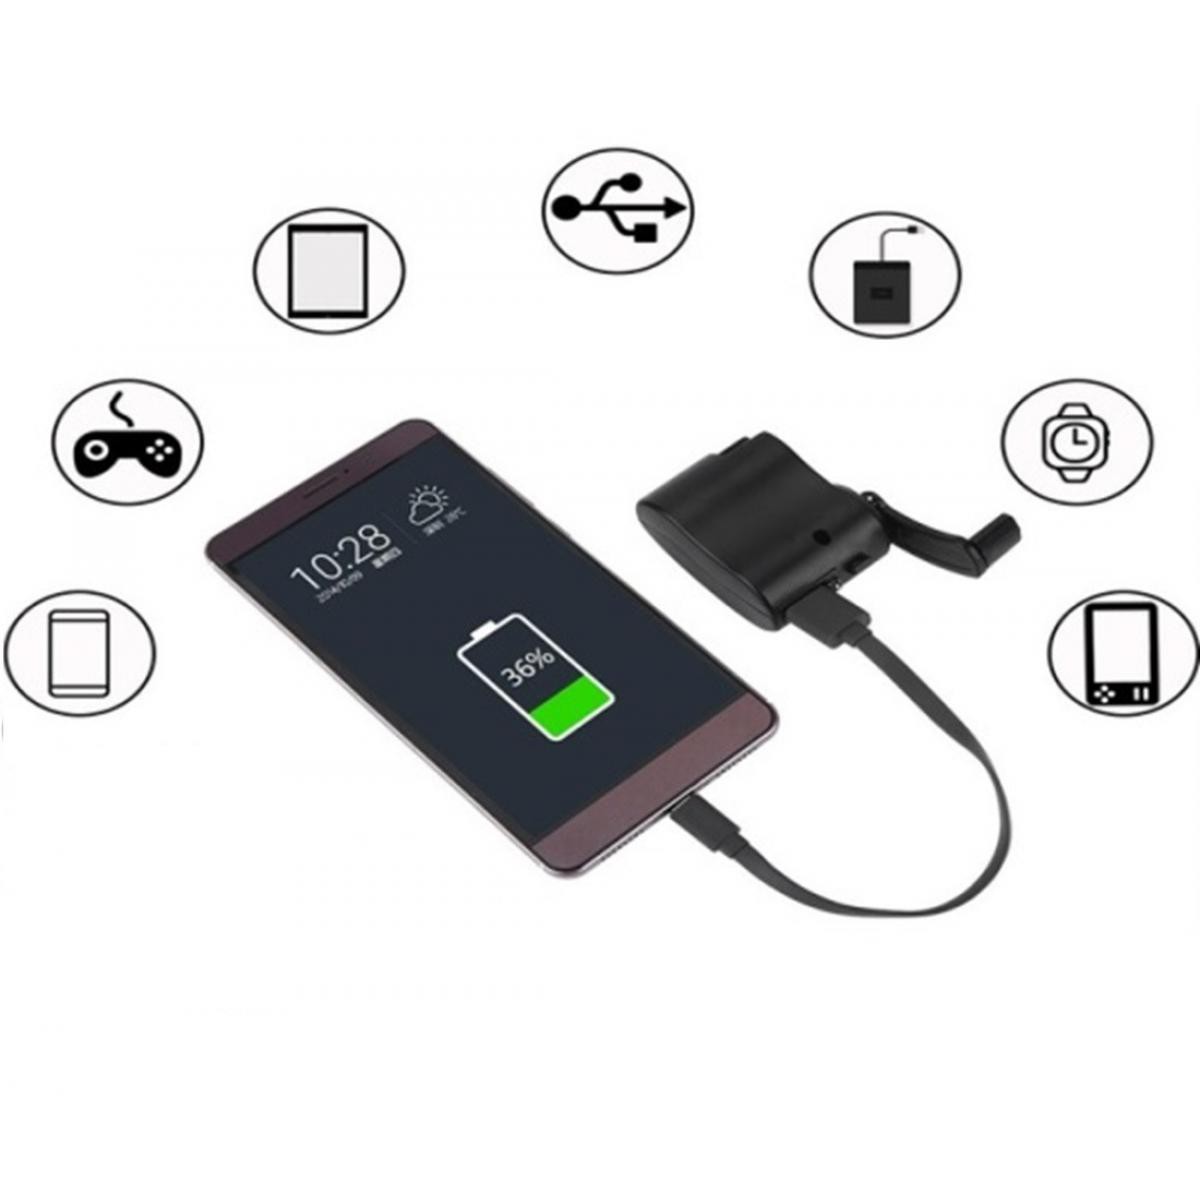 Shot - Dynamo pour HUAWEI P9 Smartphone Chargeur USB Batterie Manivelle Secours (NOIR) - Autres accessoires smartphone